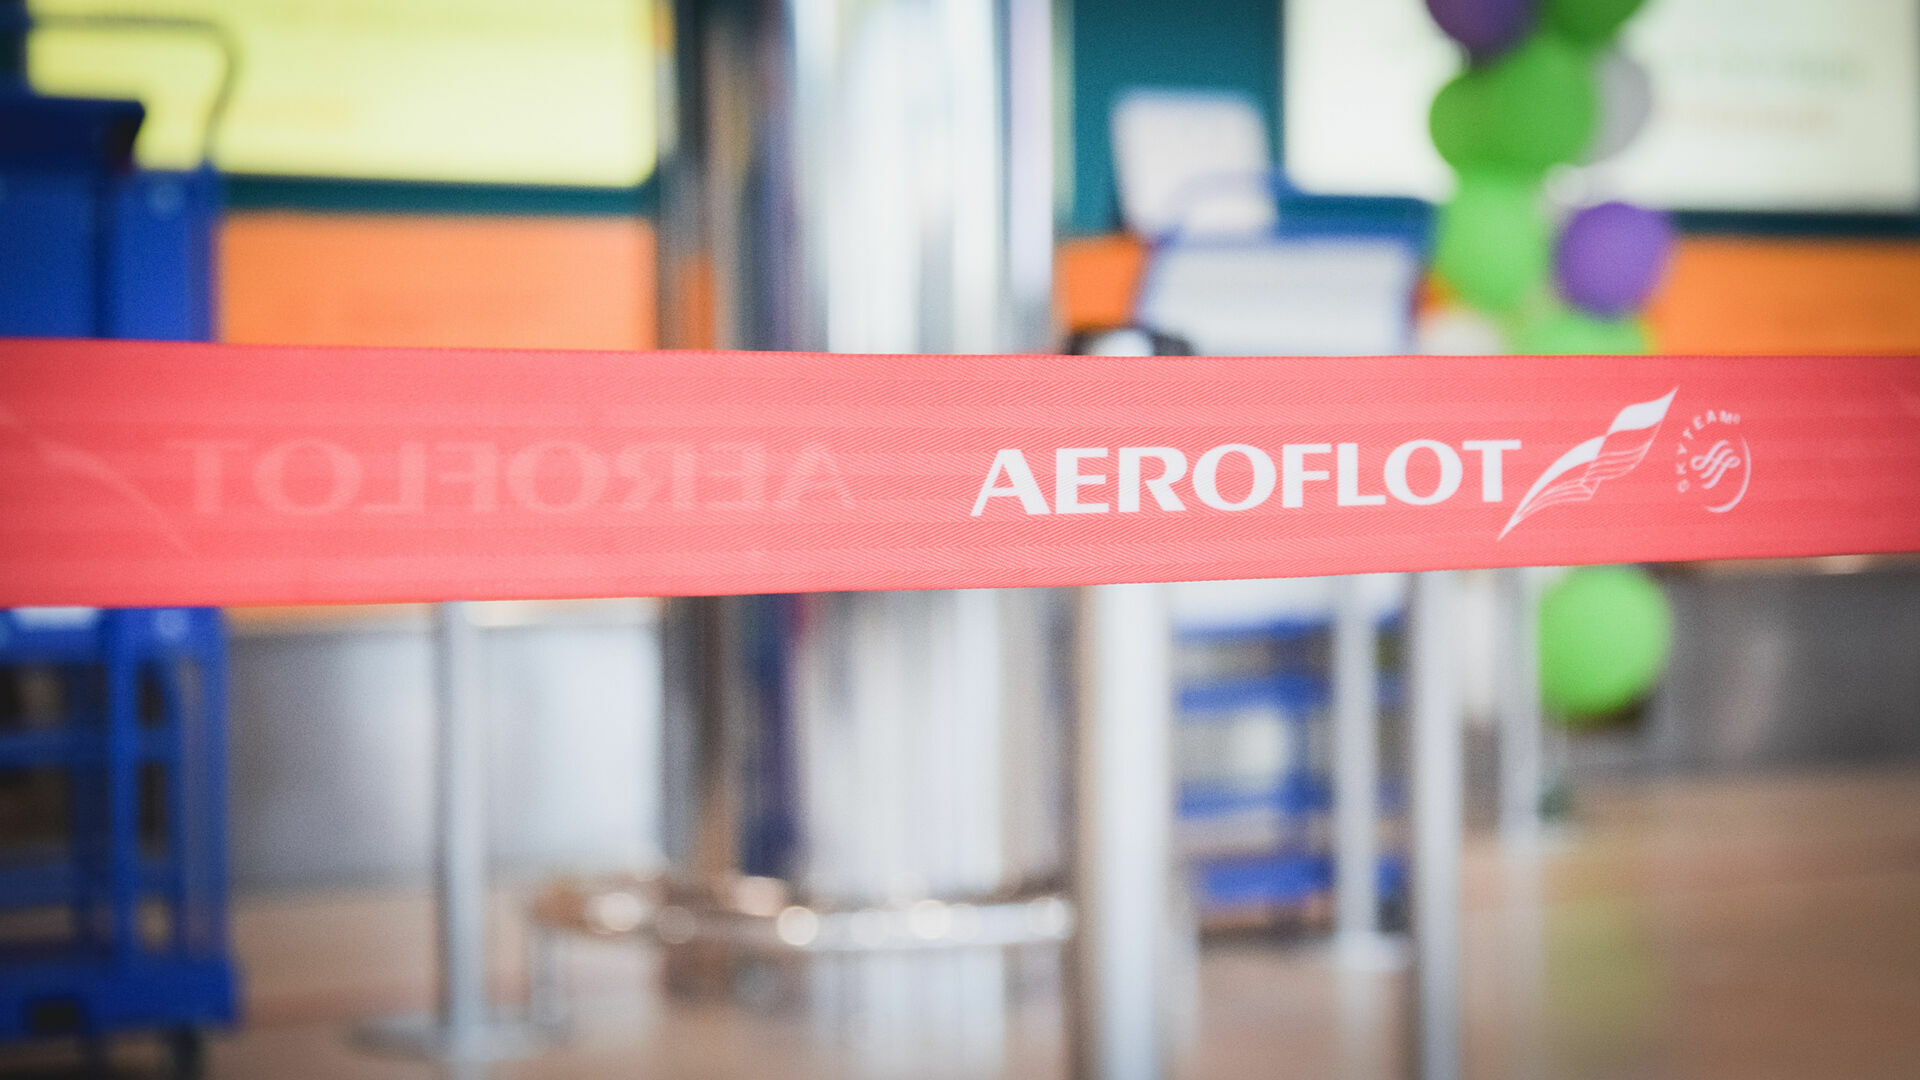 «Аэрофлот» снял с рейса из Дубая 500 человек: есть две версии случившегося